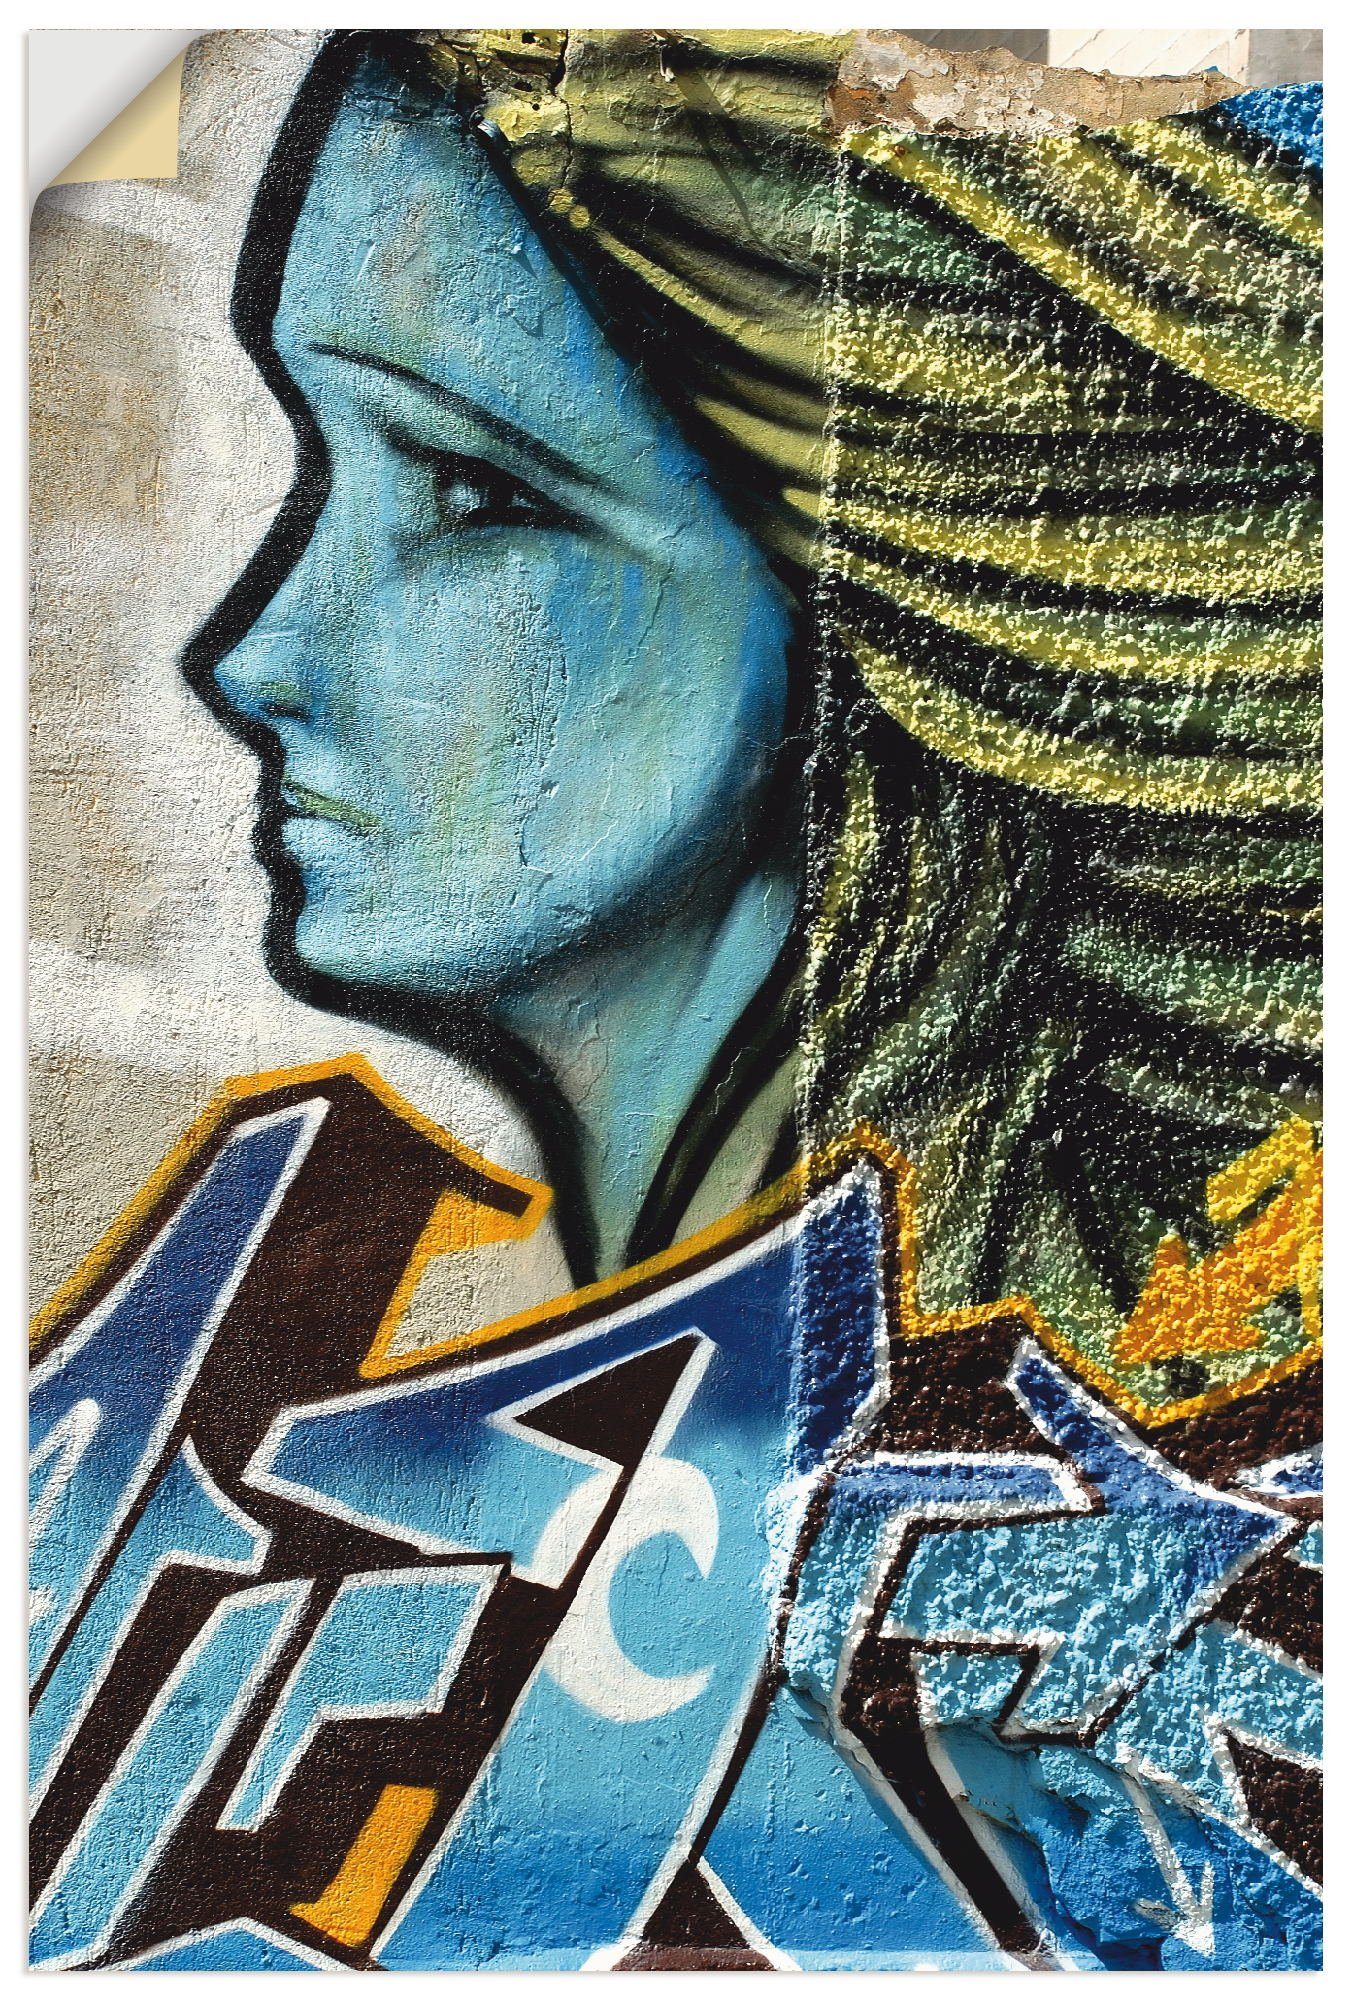 Artland Artprint Graffiti - vrouw in blauw in vele afmetingen & productsoorten - artprint van aluminium / artprint voor buiten, artprint op linnen, poster, muursticker / wandfolie